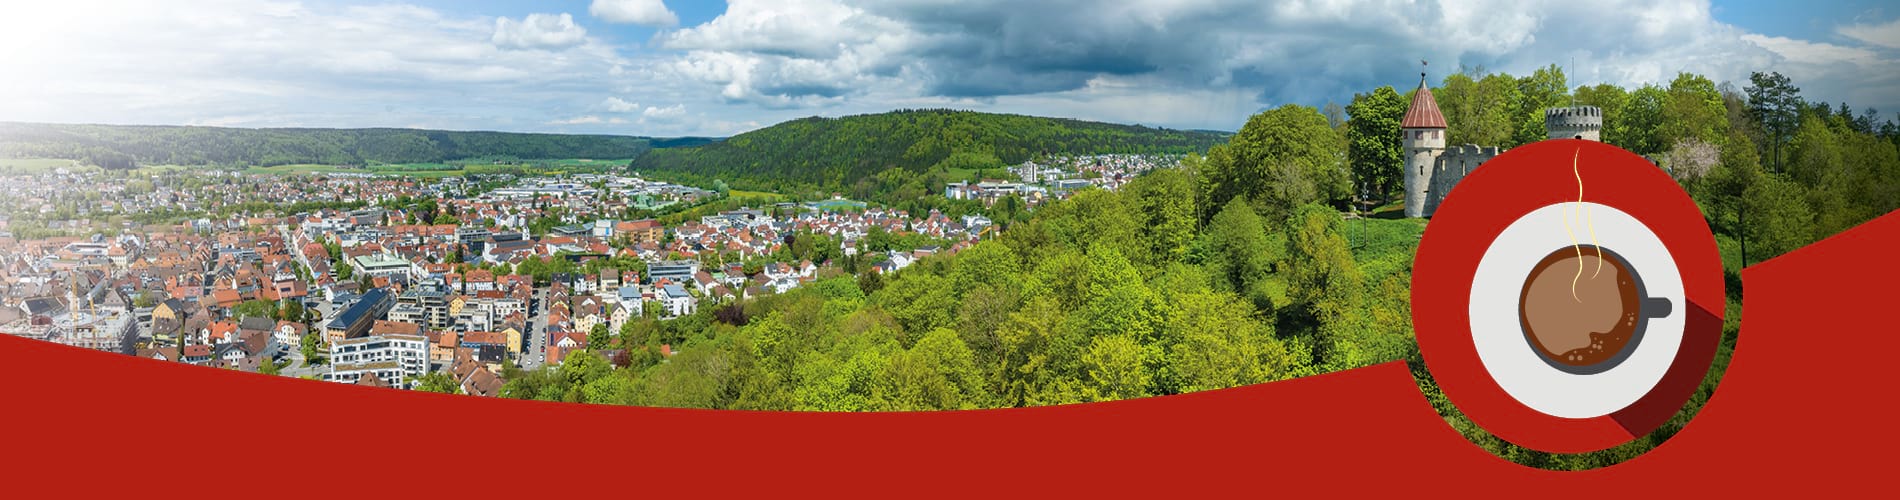 Das Bild zeigt die schöne Landschaft von Tuttlingen. Eine gezeichnete Kaffeetasse assoziiert das Thema "Newsletter am Morgen" der Schwäbischen Zeitung.